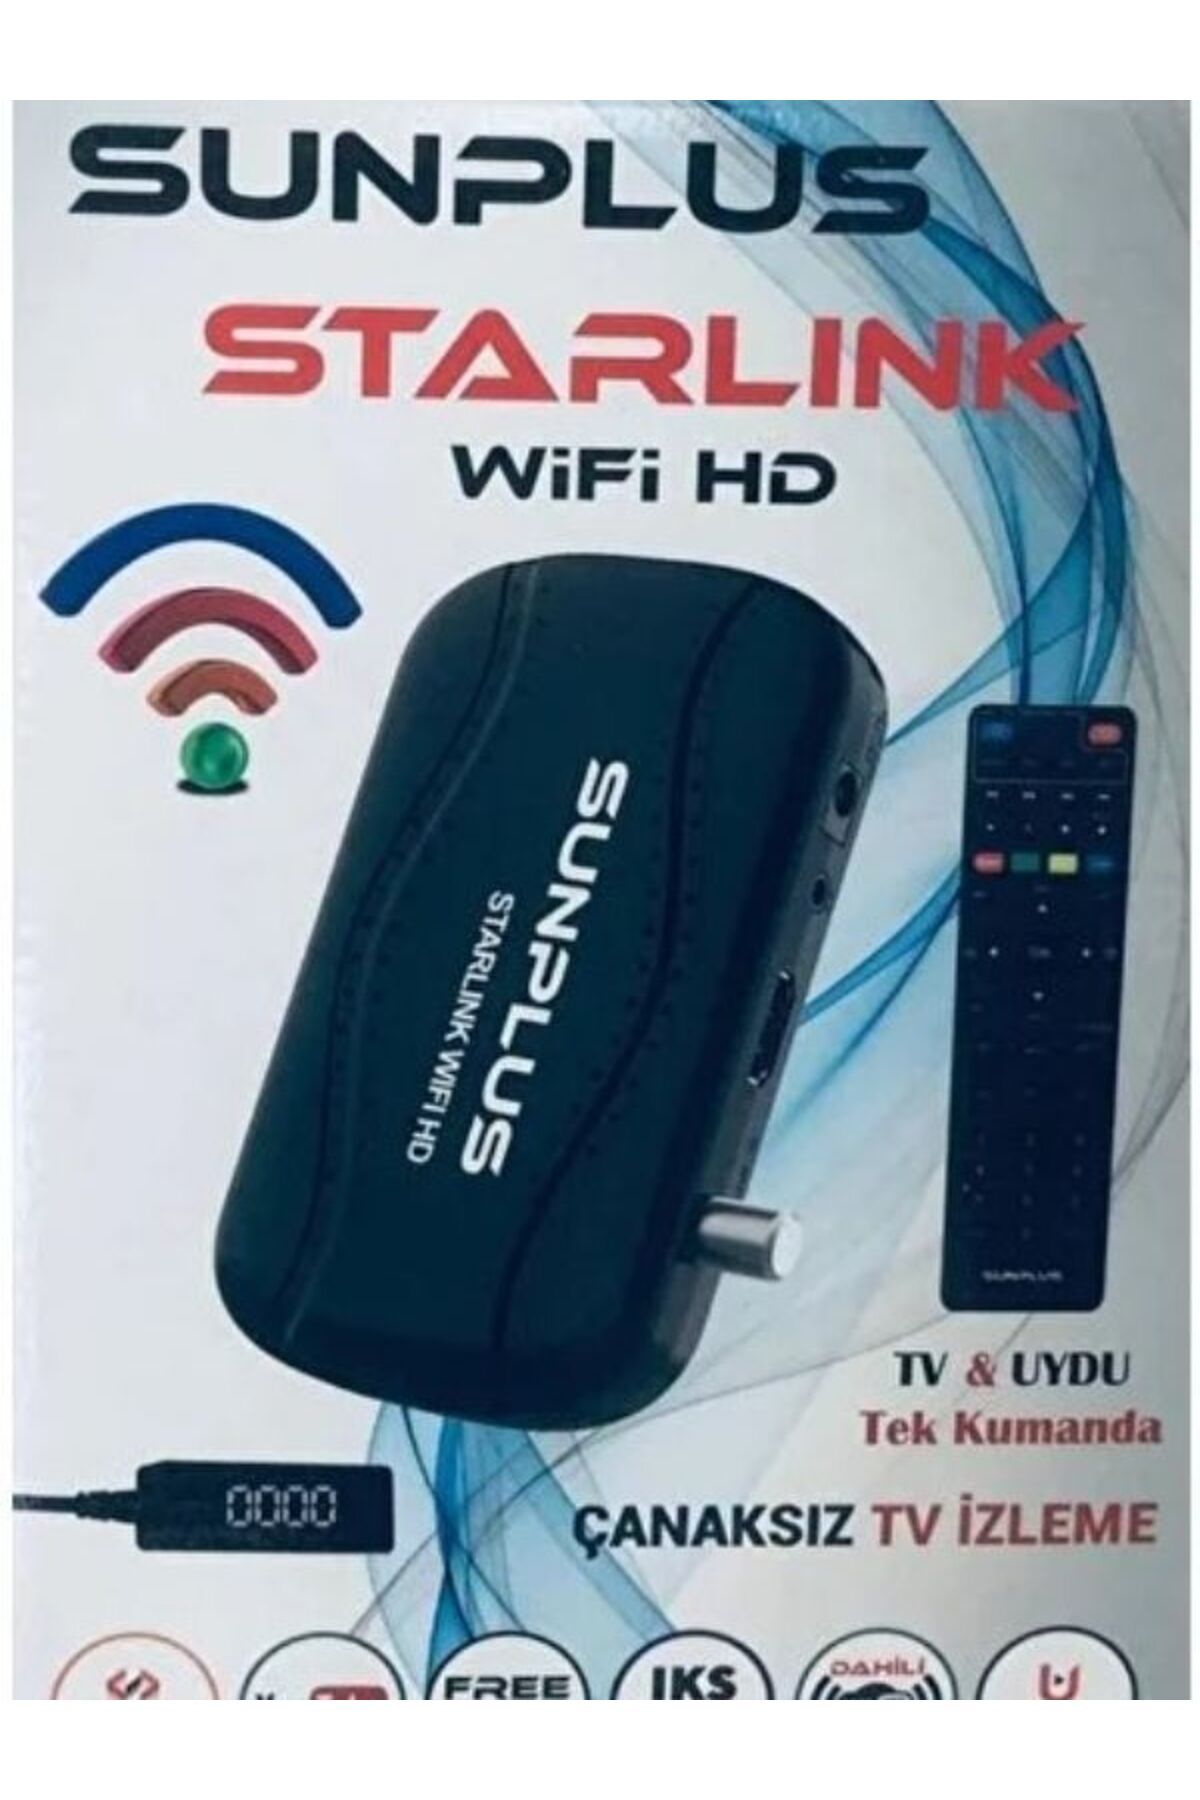 Sunplus Starlınk Hd Uydu Alıcısı Dahili Wi-Fi Full Hd 1080P Tv & Uydu Tek Kumanda